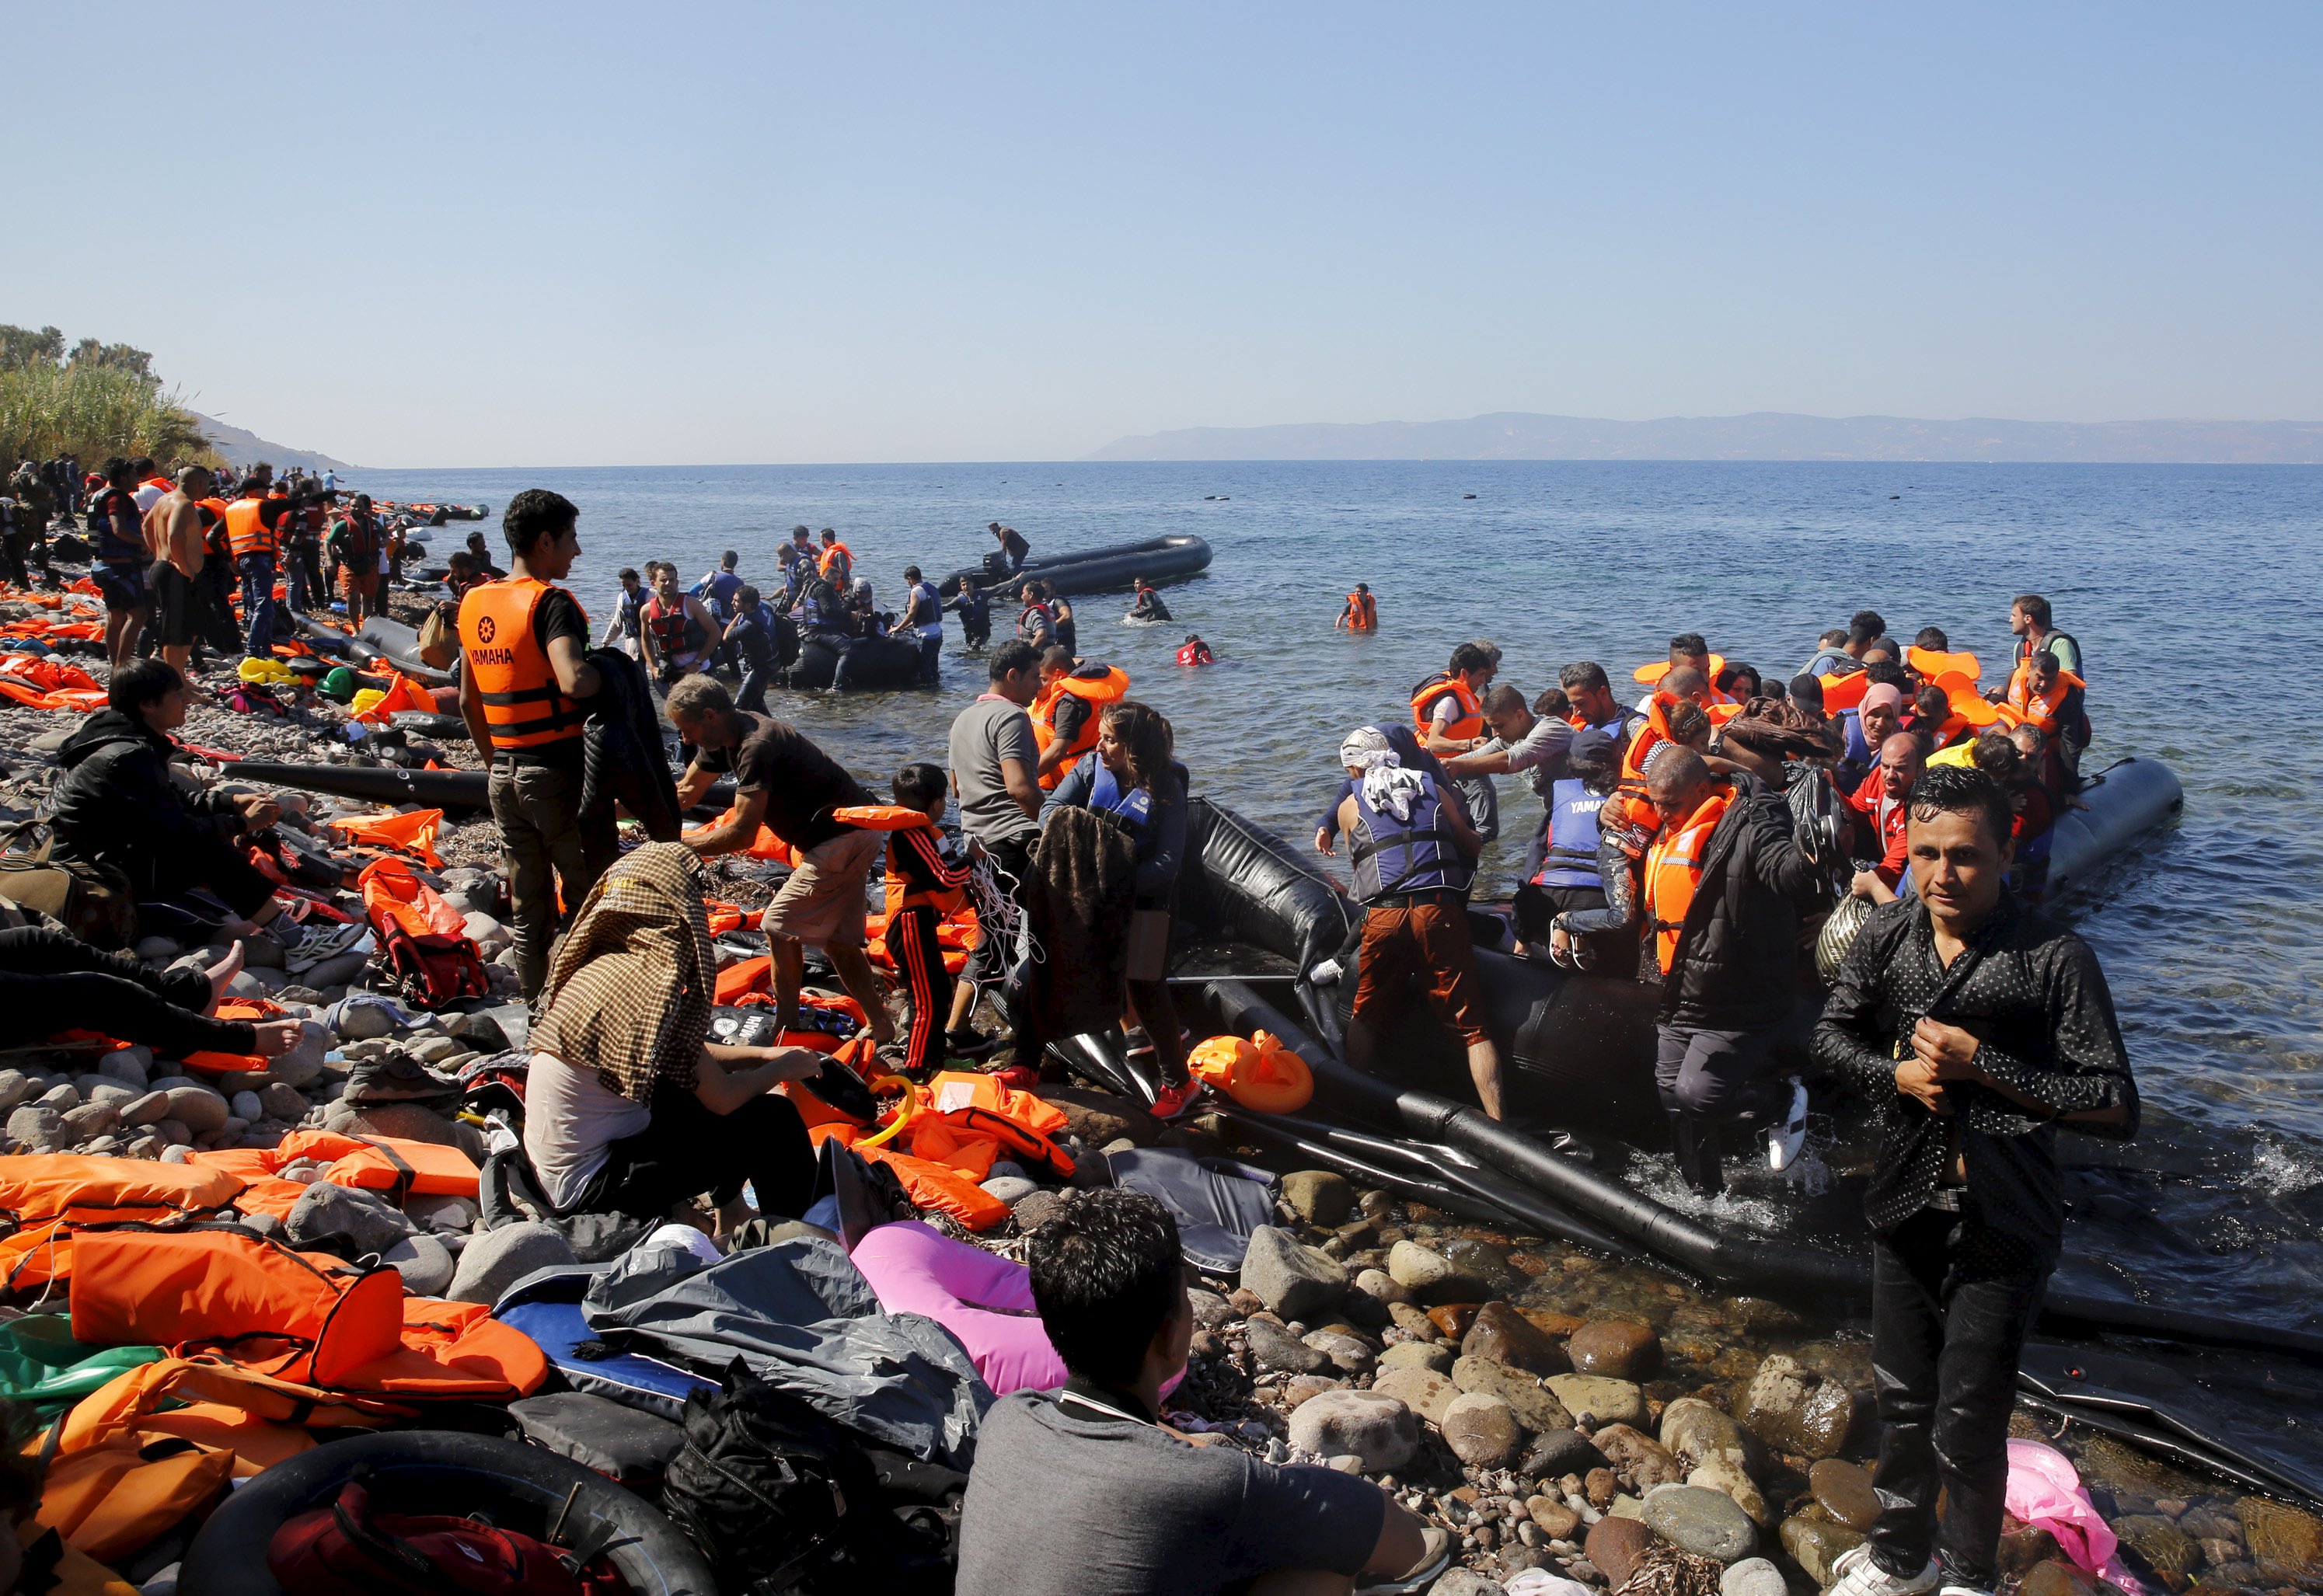 Става страшно! Половин милион бежанци влезли в Европа за 8 месеца (ВИДЕО)